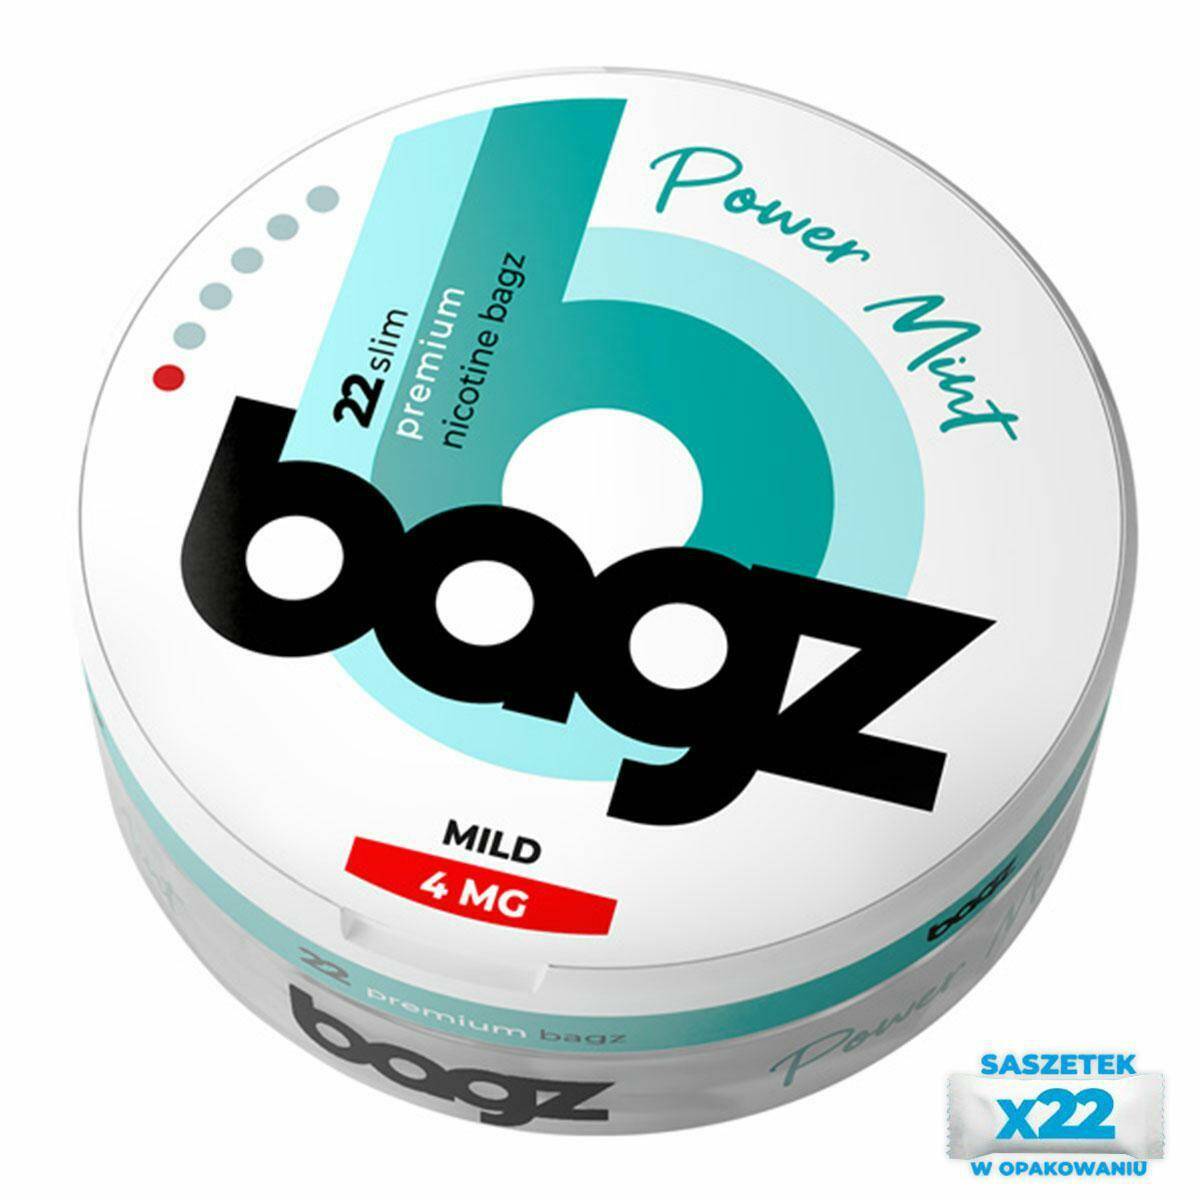 Saszetki nikotynowe BAGZ Power Mint  4mg